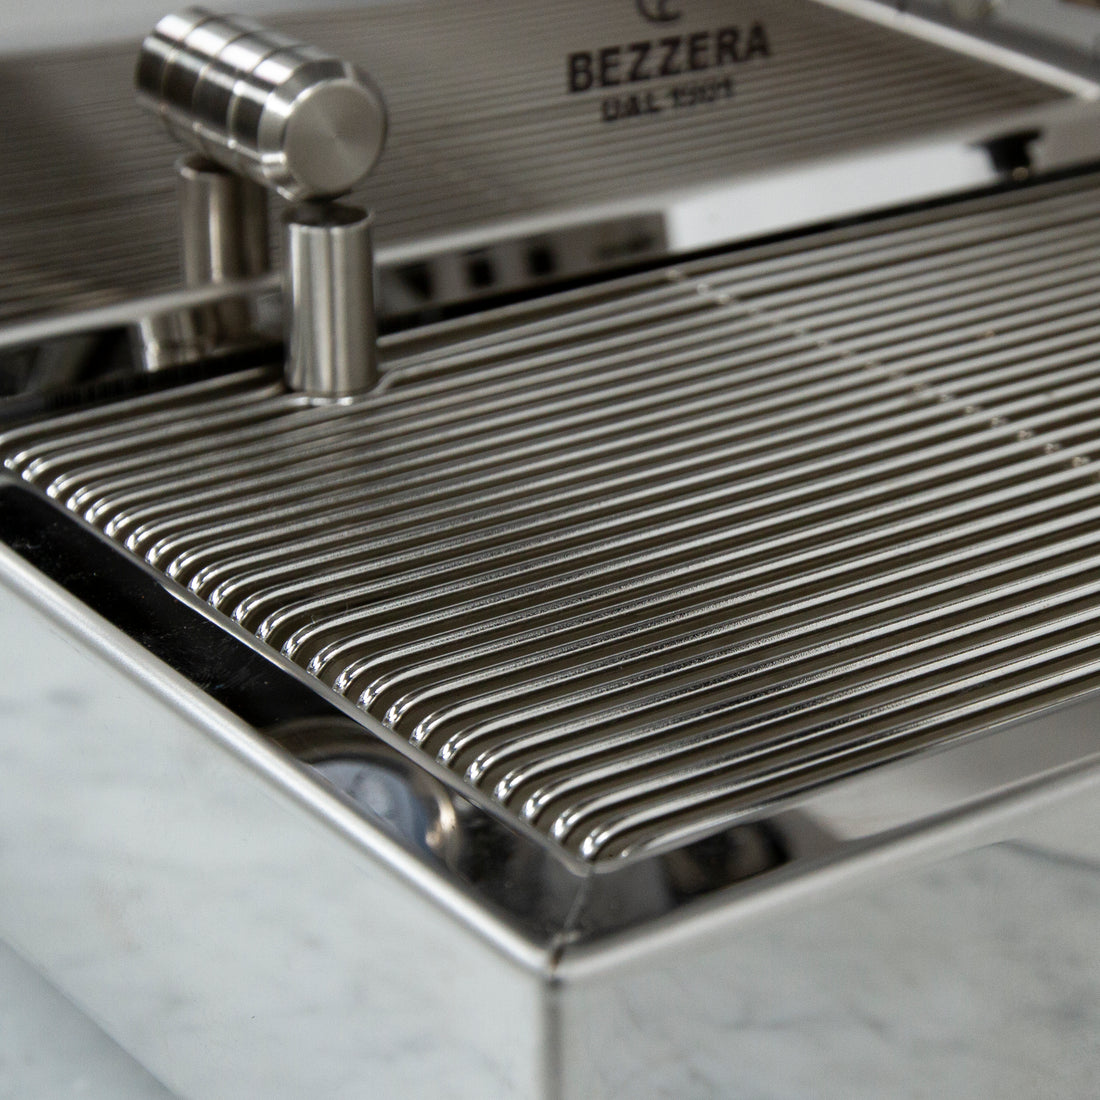 Bezzera BZ13 DE Rosso Espresso Machine - Special Edition